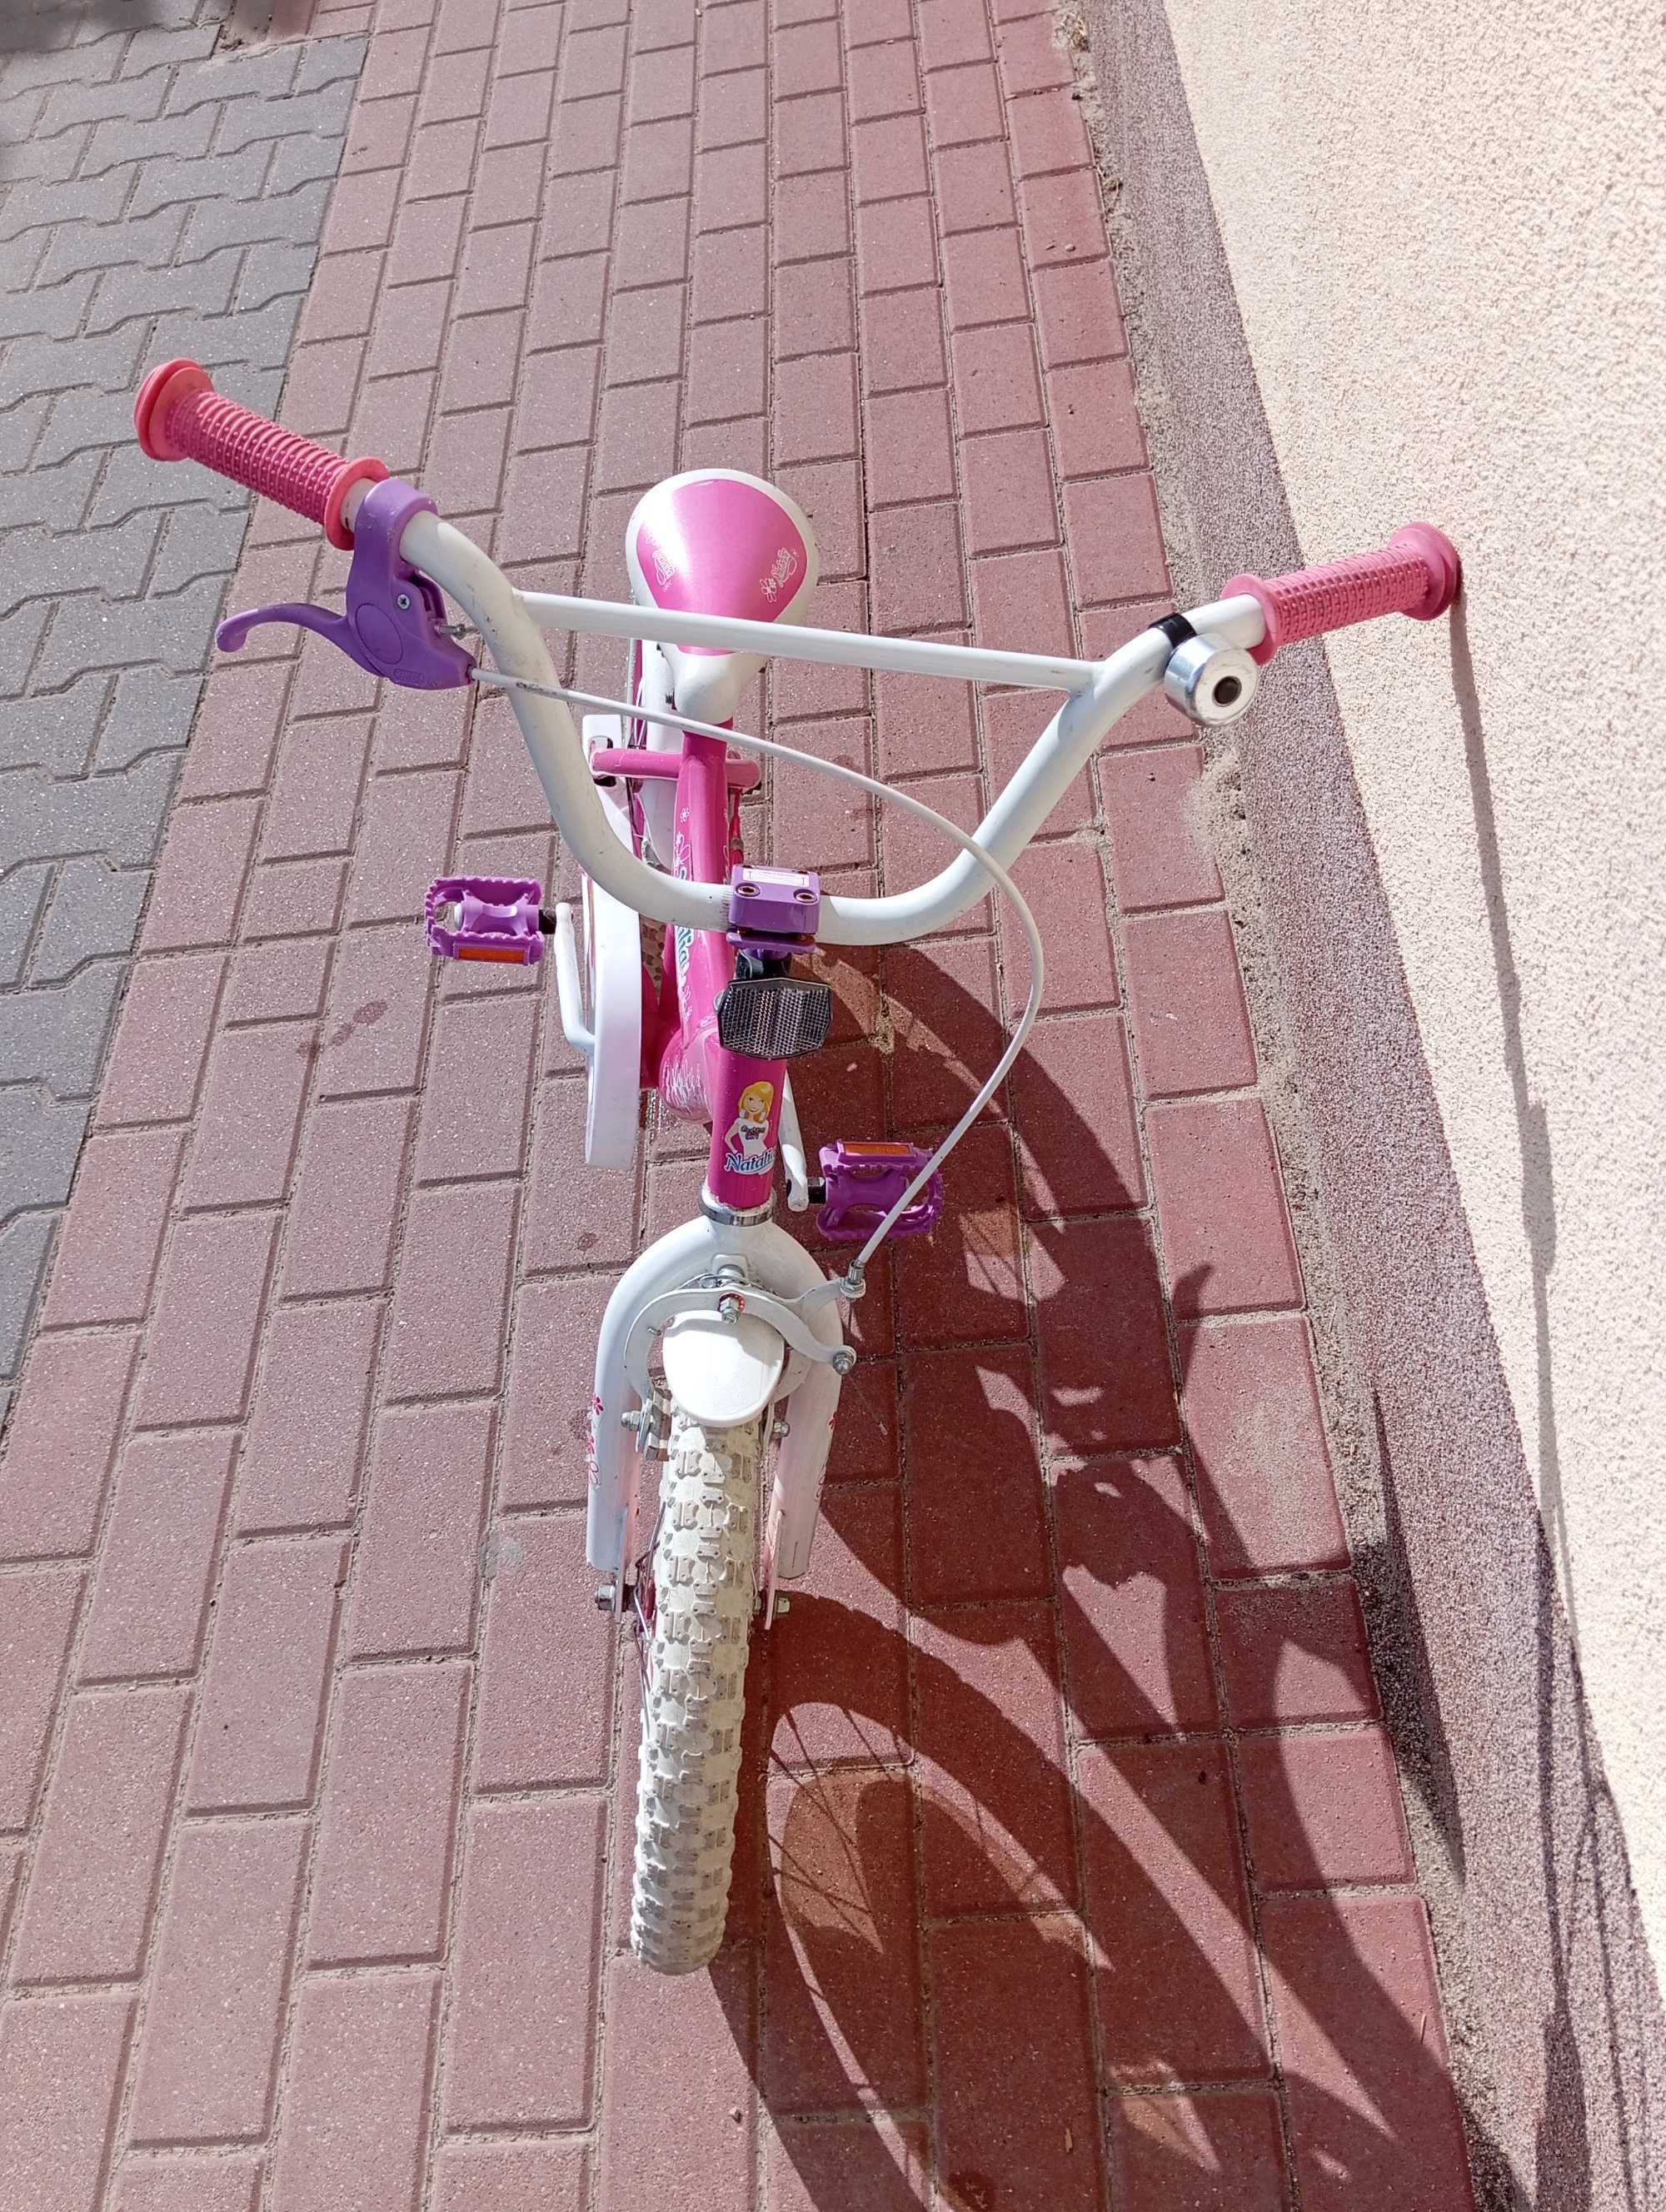 Rower dla dziewczynki 16